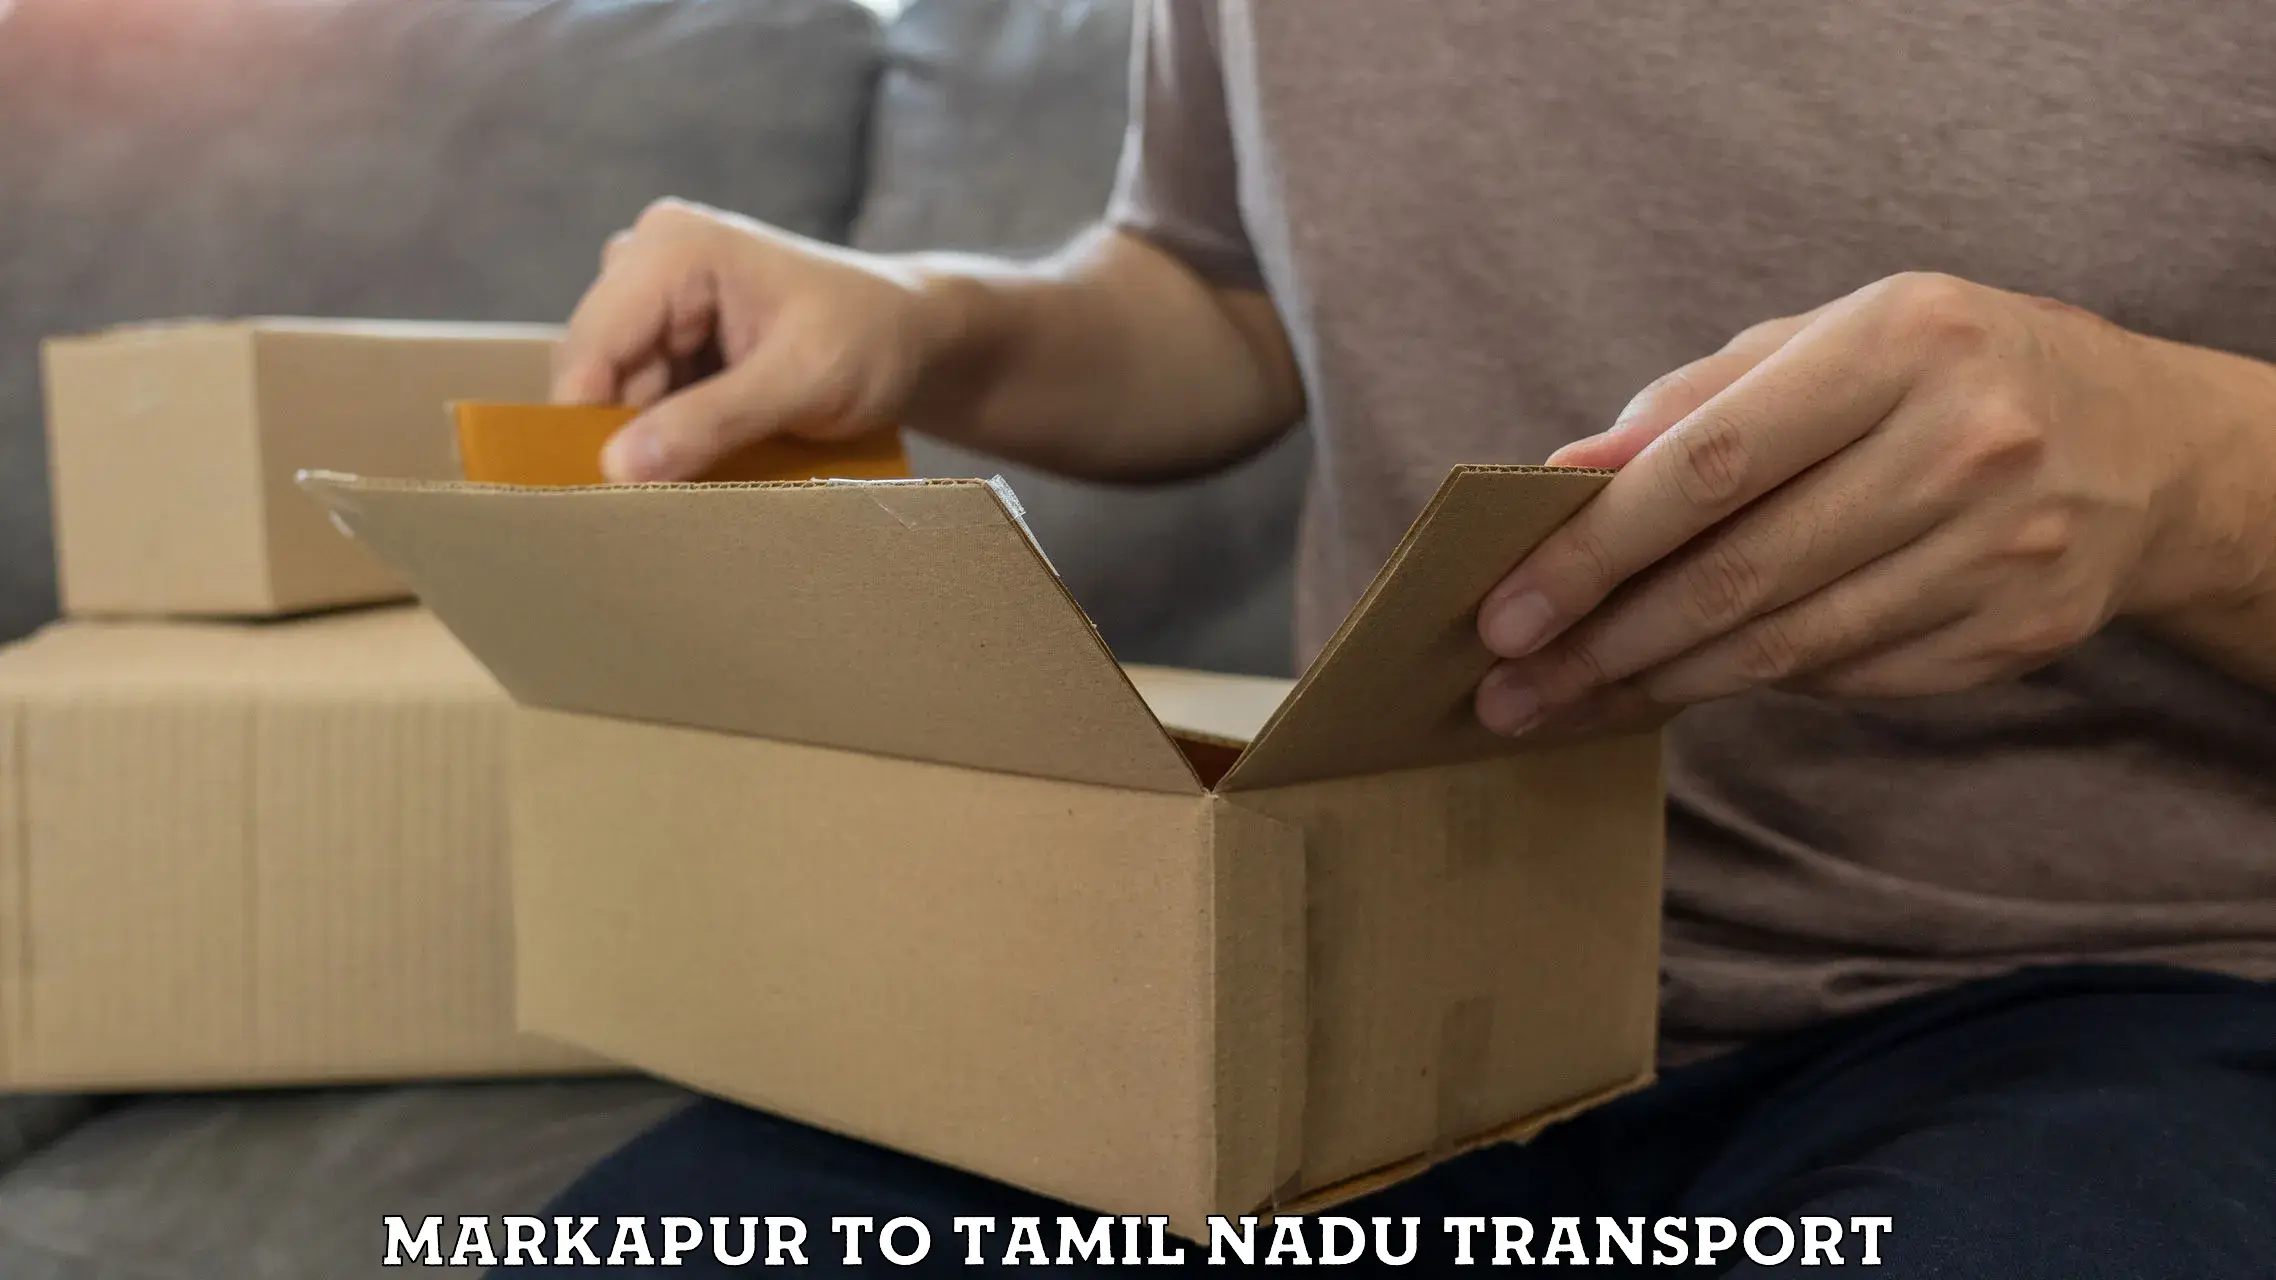 Transportation services Markapur to IIIT Tiruchirappalli